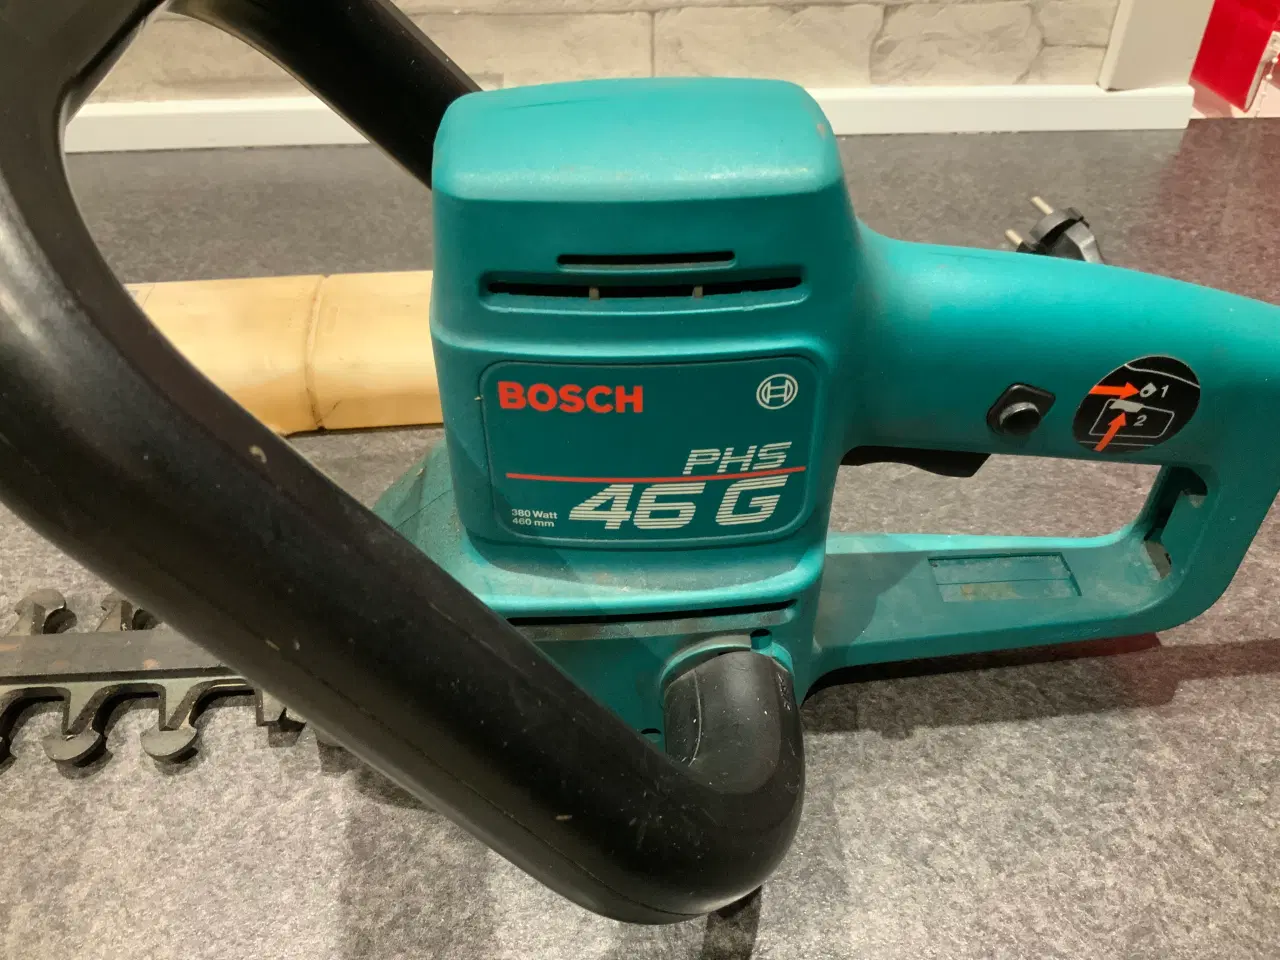 Billede 2 - Bosch phs 46 g hækkeklipper